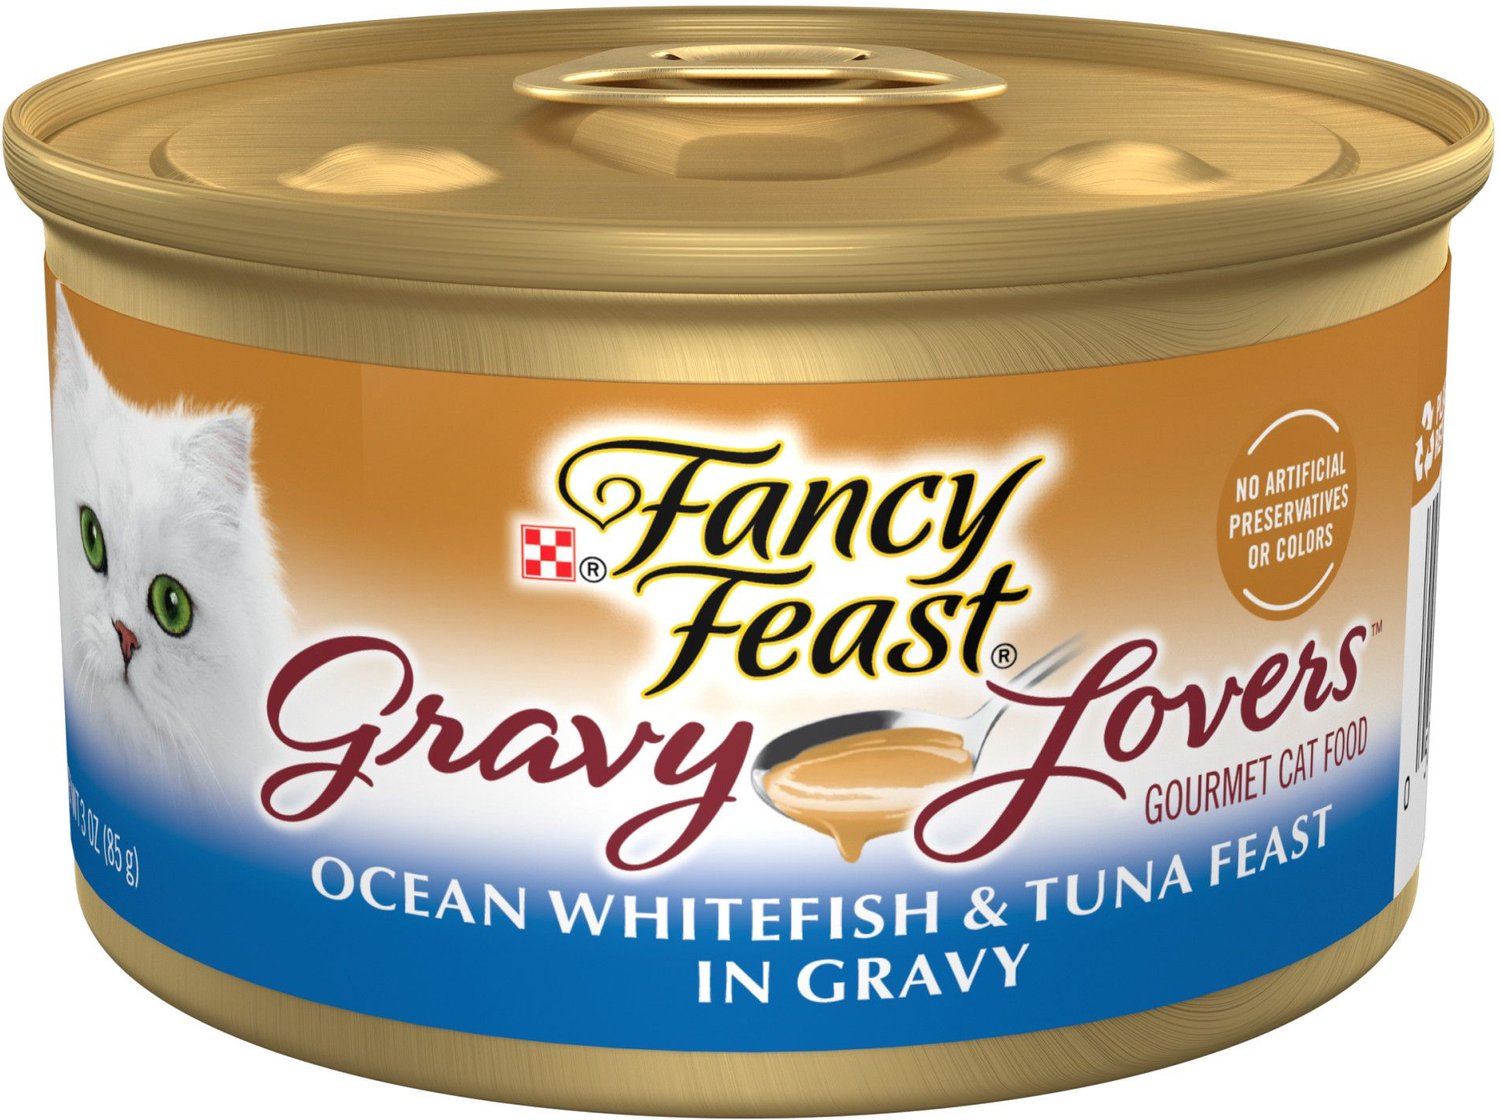 Fancy Feast Gravy Lovers Ocean Whitefish & Tuna Feast in